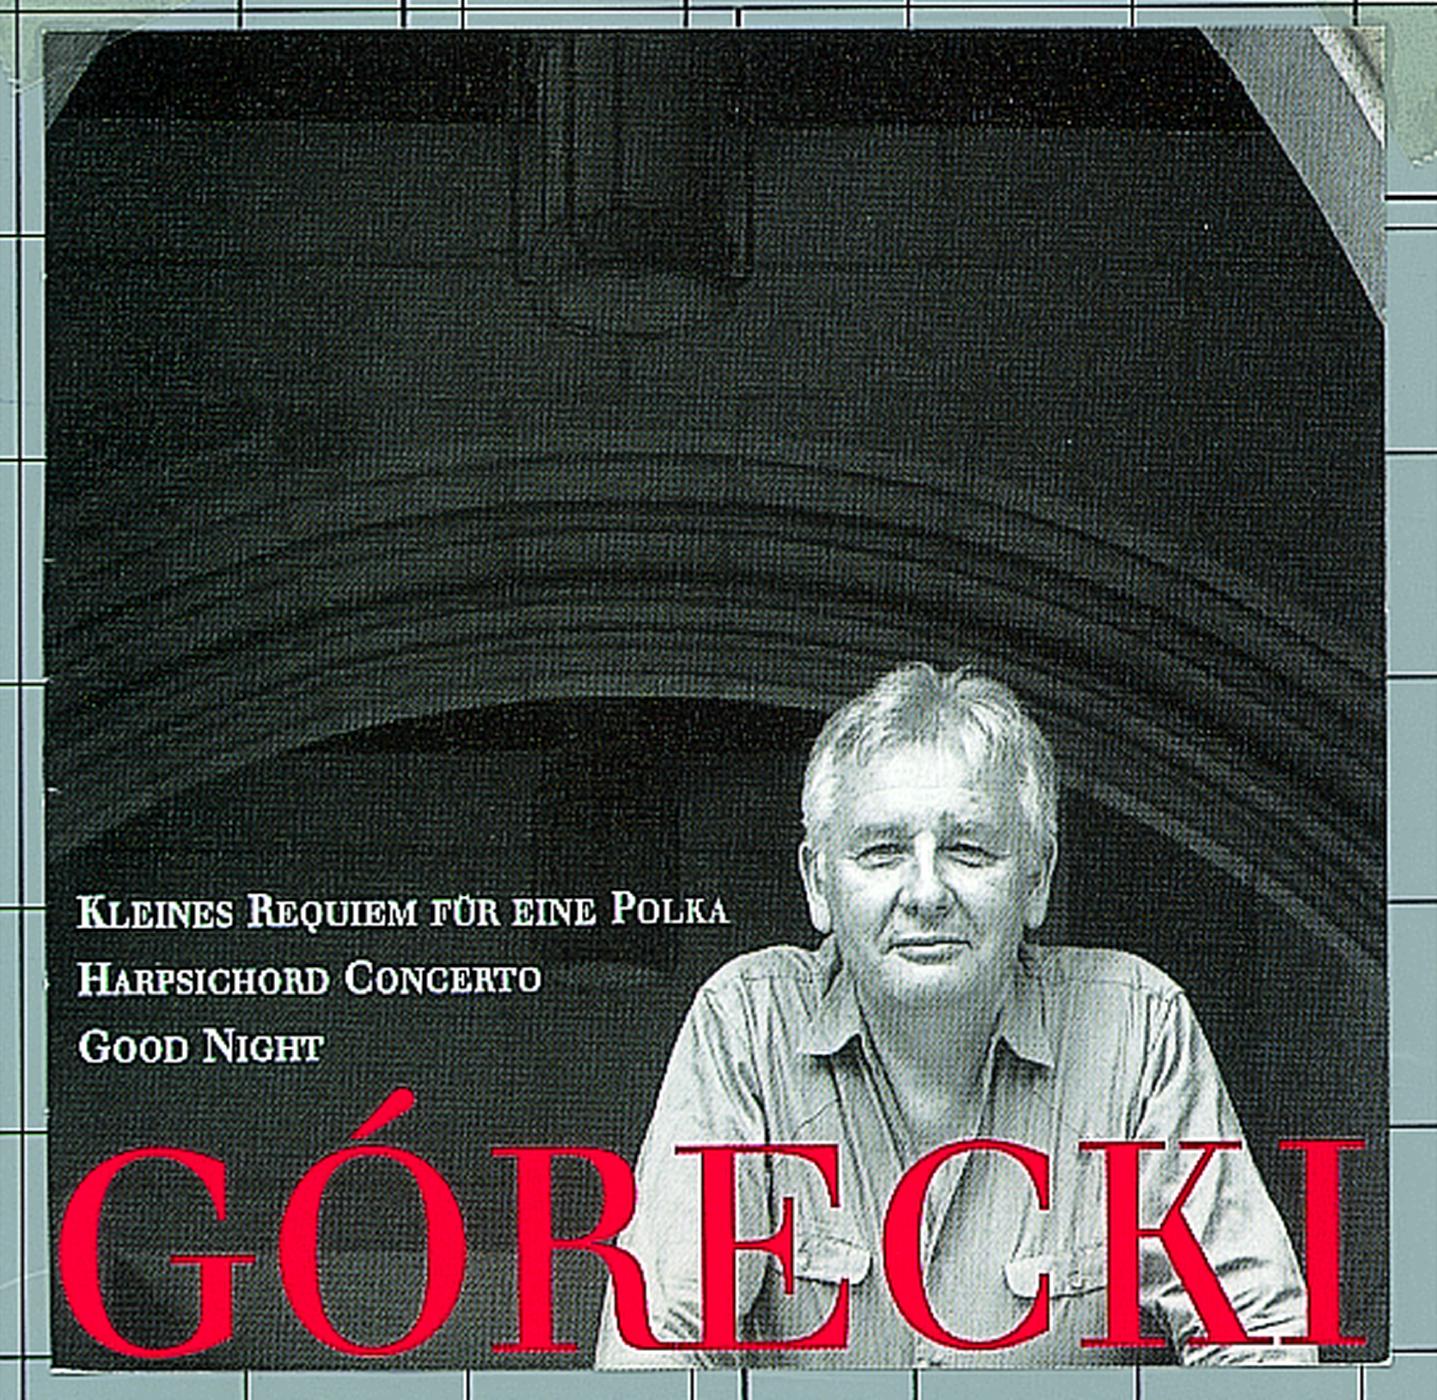 Henryk Gorecki - Kleines Requiem fur eine Polka: III. Allegro - deciso assai